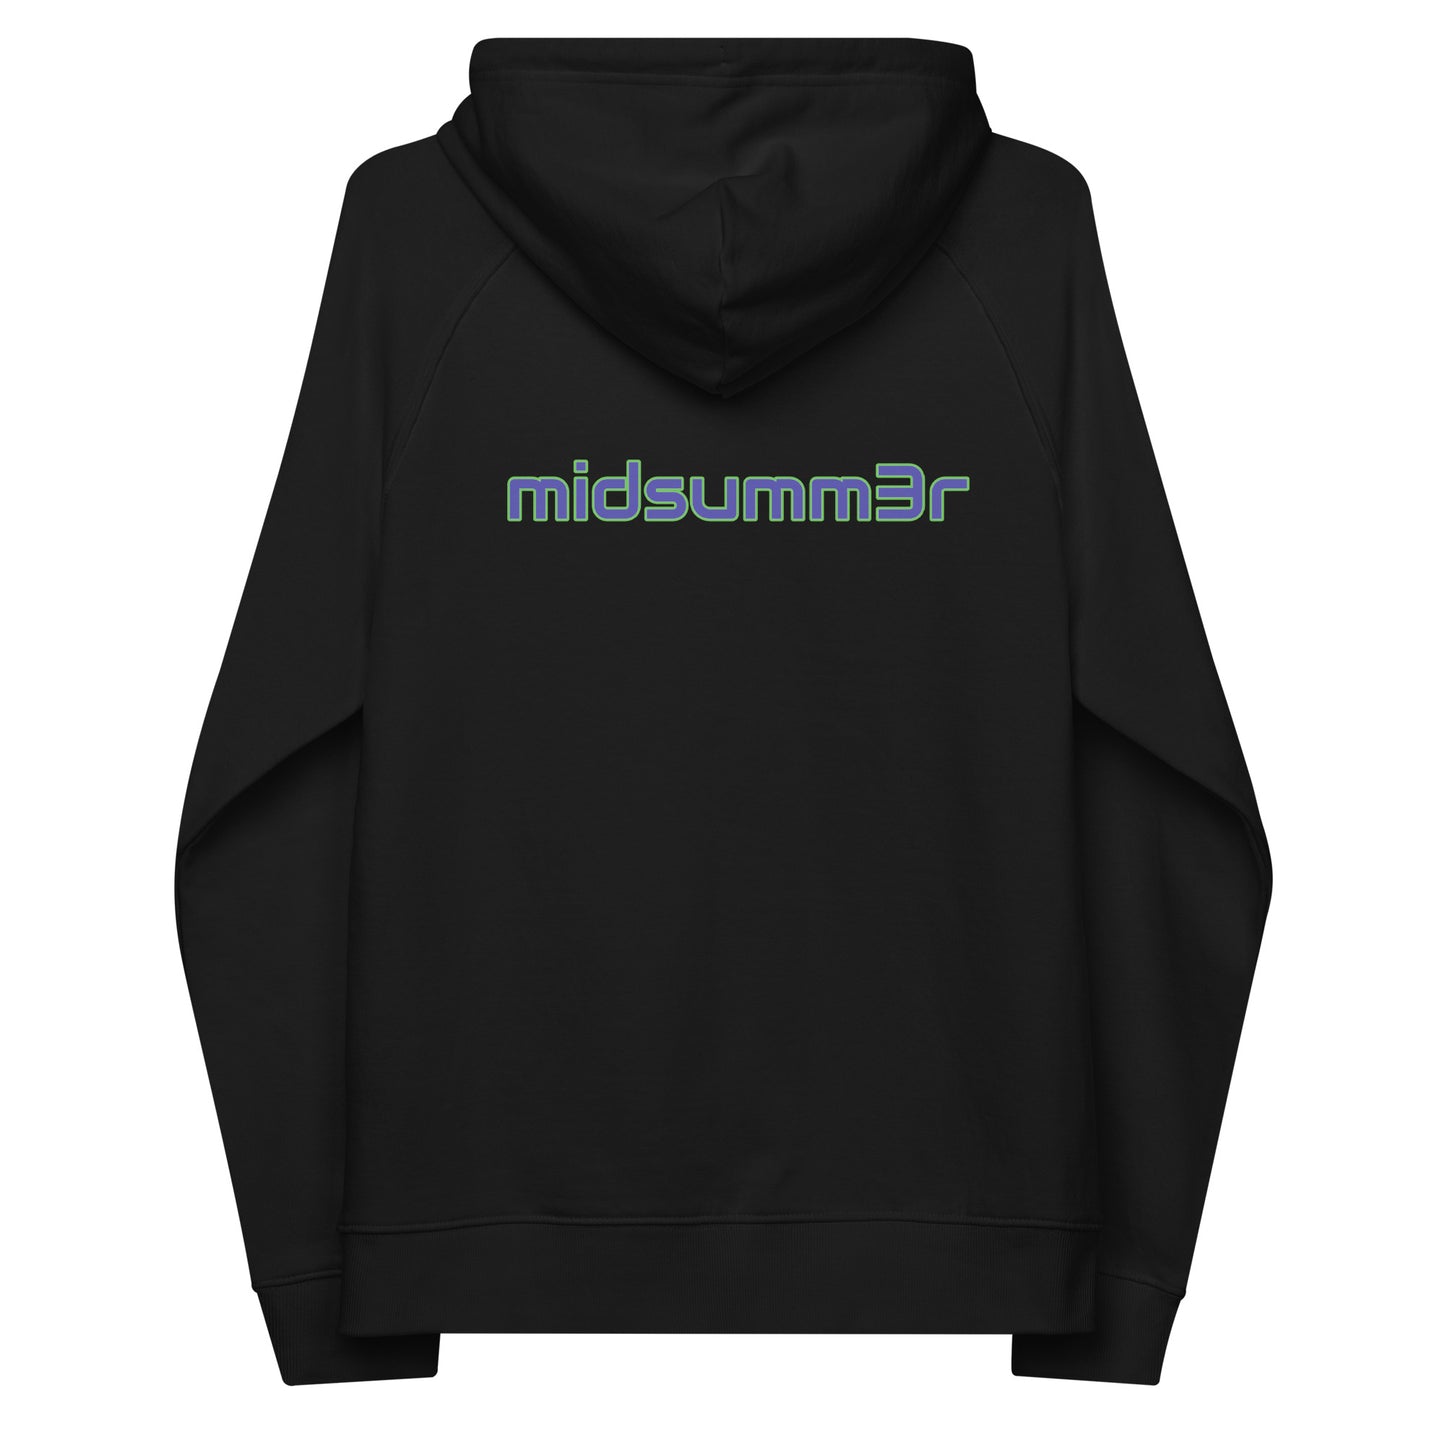 midsumm3r hoodie